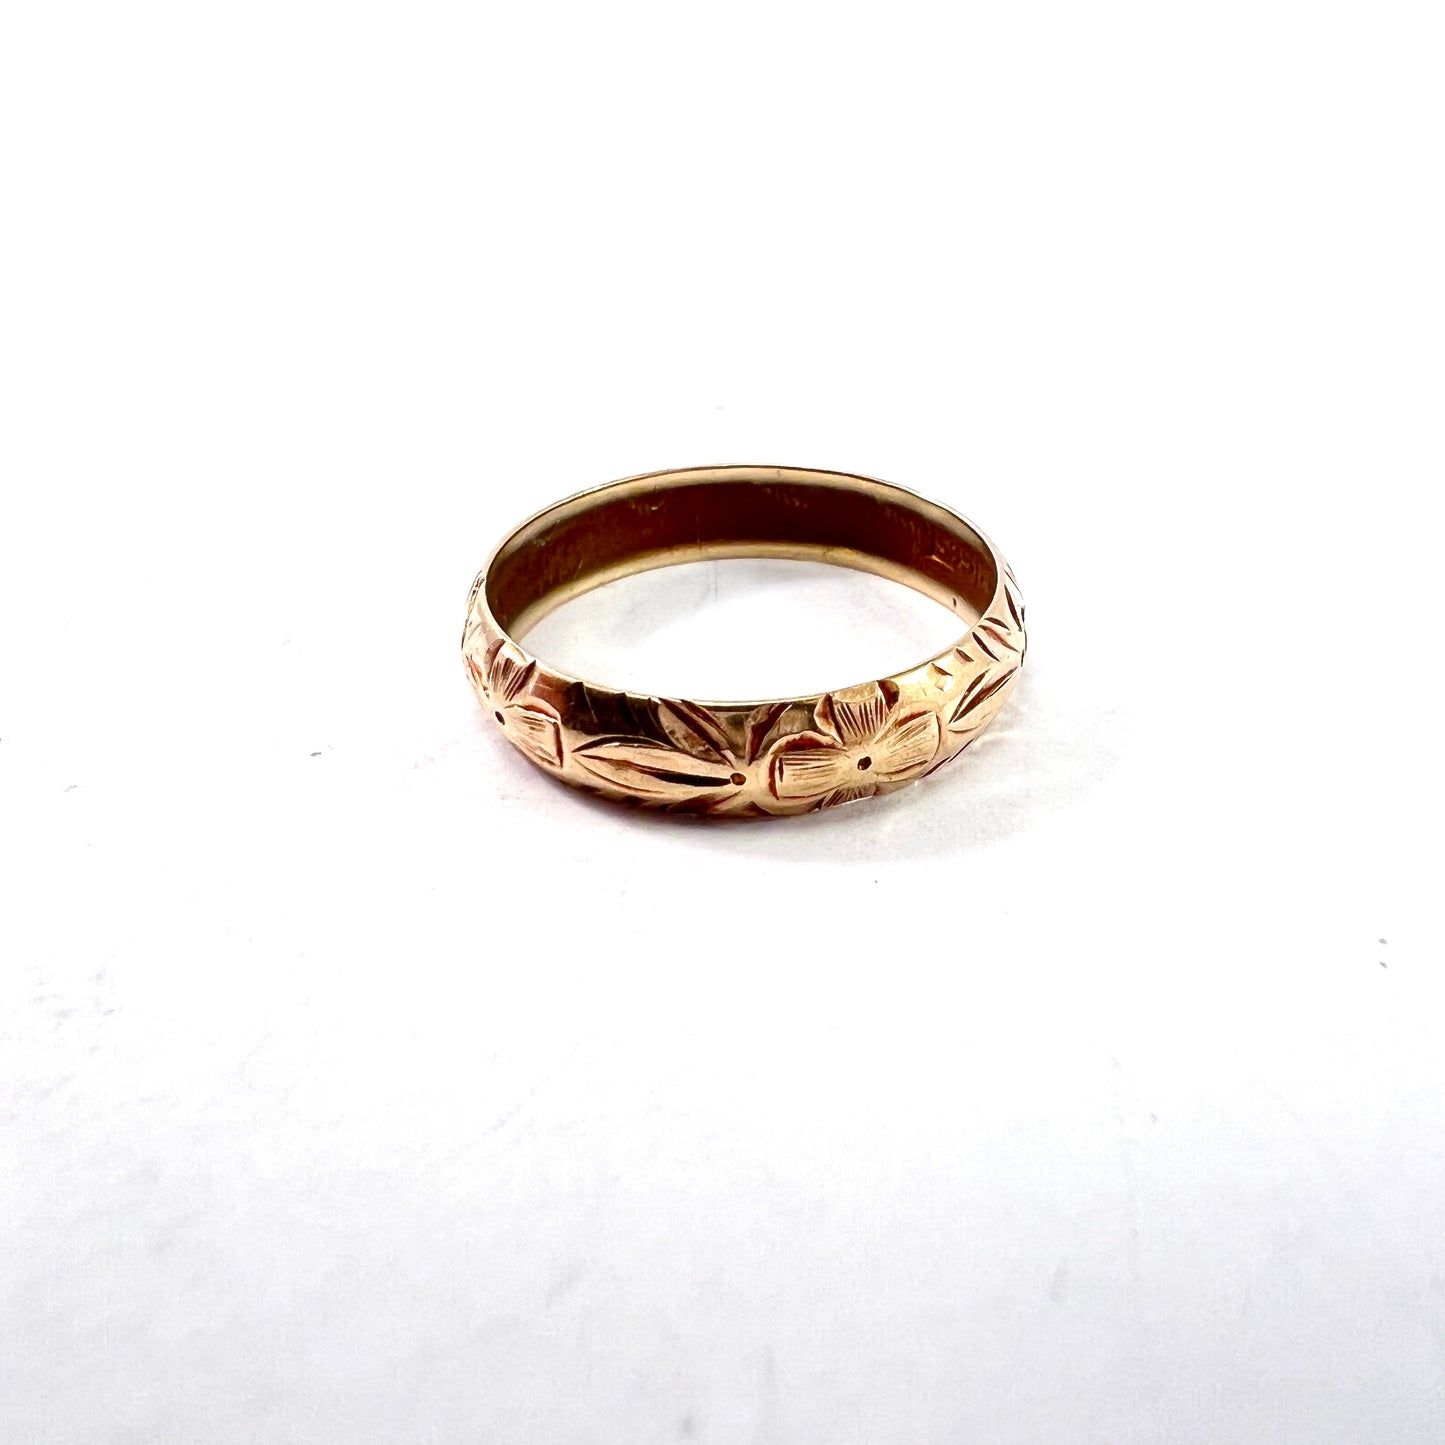 Michael Mindort, Denmark 1943. Vintage (War-Time) 14k Gold Wedding Band Ring.